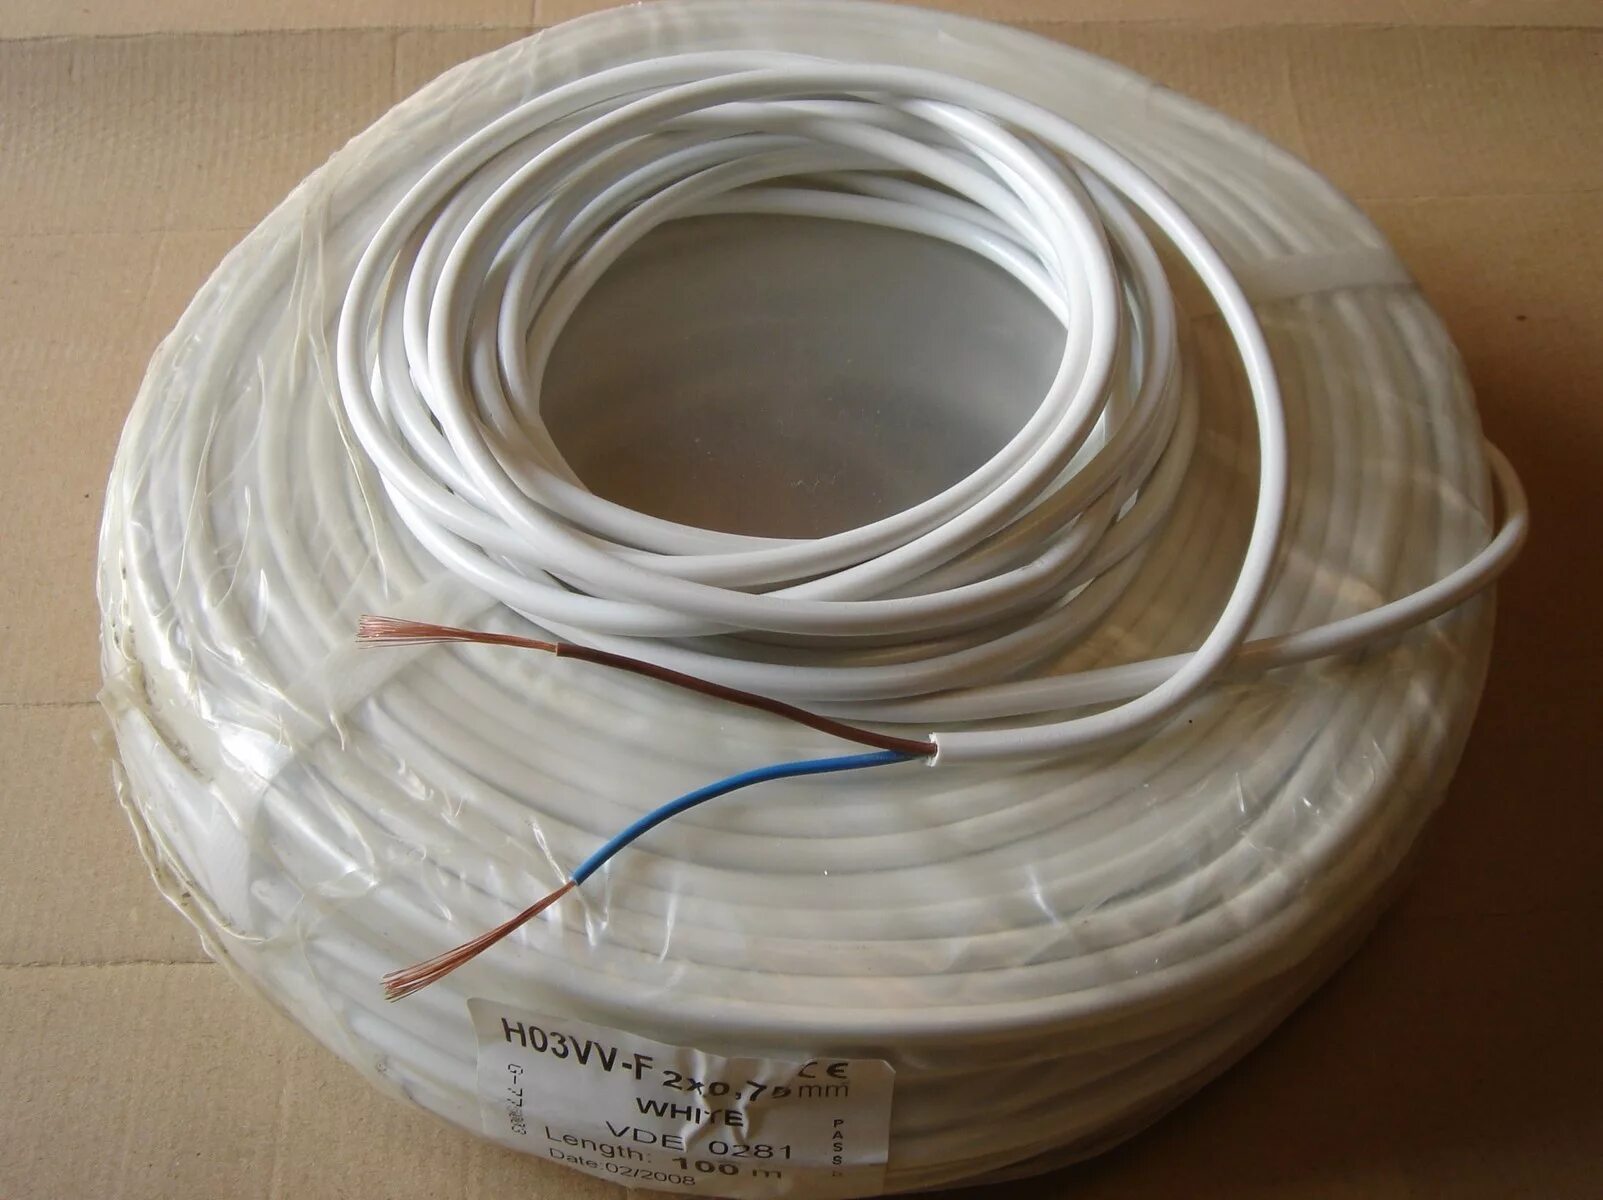 Cable кабель syti 2x0,75 Price. Провод 0.75 мм2. SV-71b провод поворотный. Провод 2x 2,75.